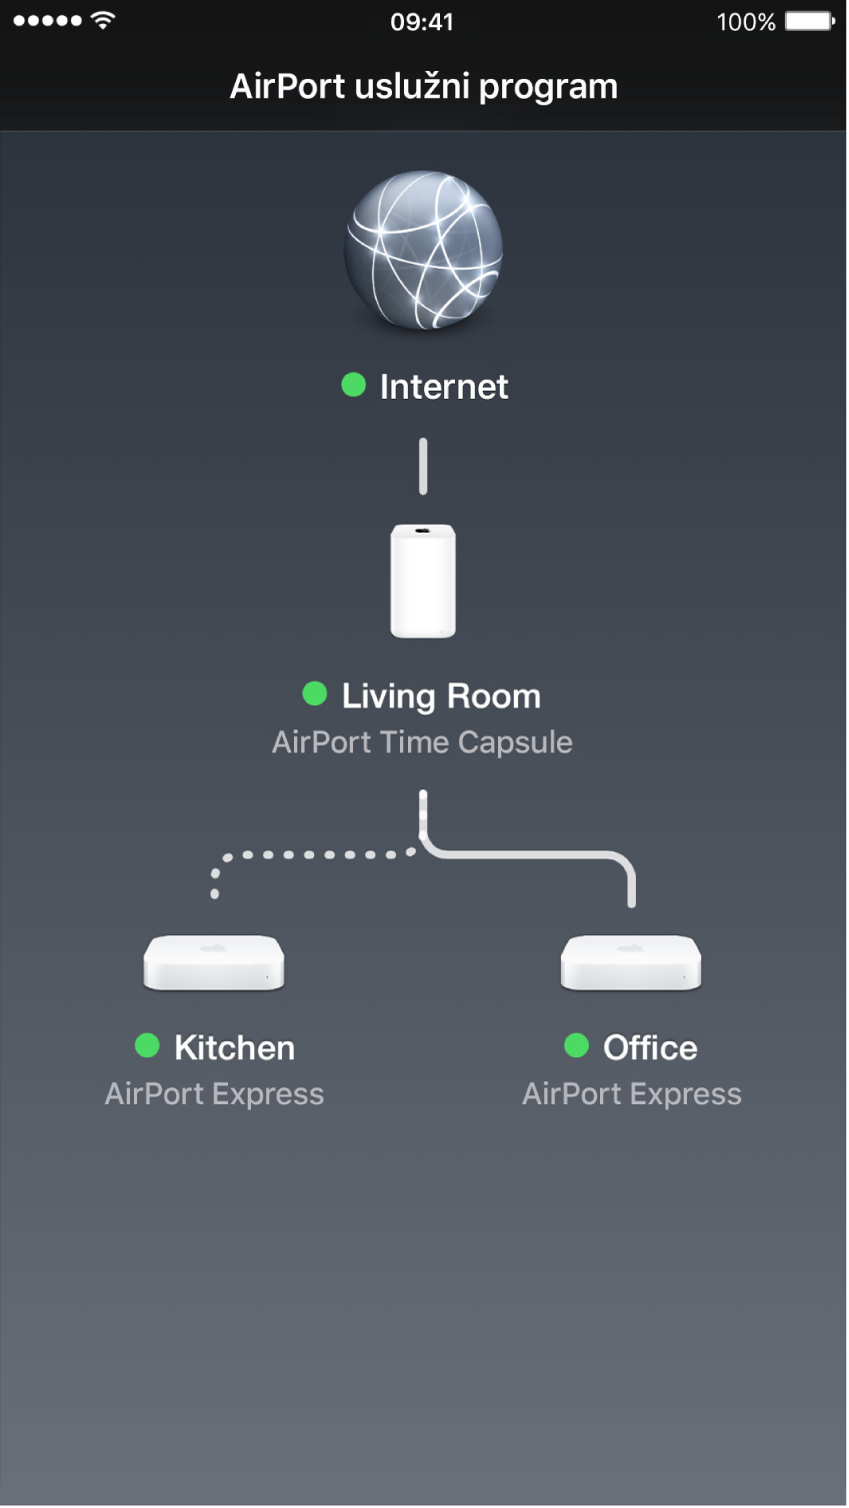 Grafički pregled u AirPort uslužnom programu za iOS.